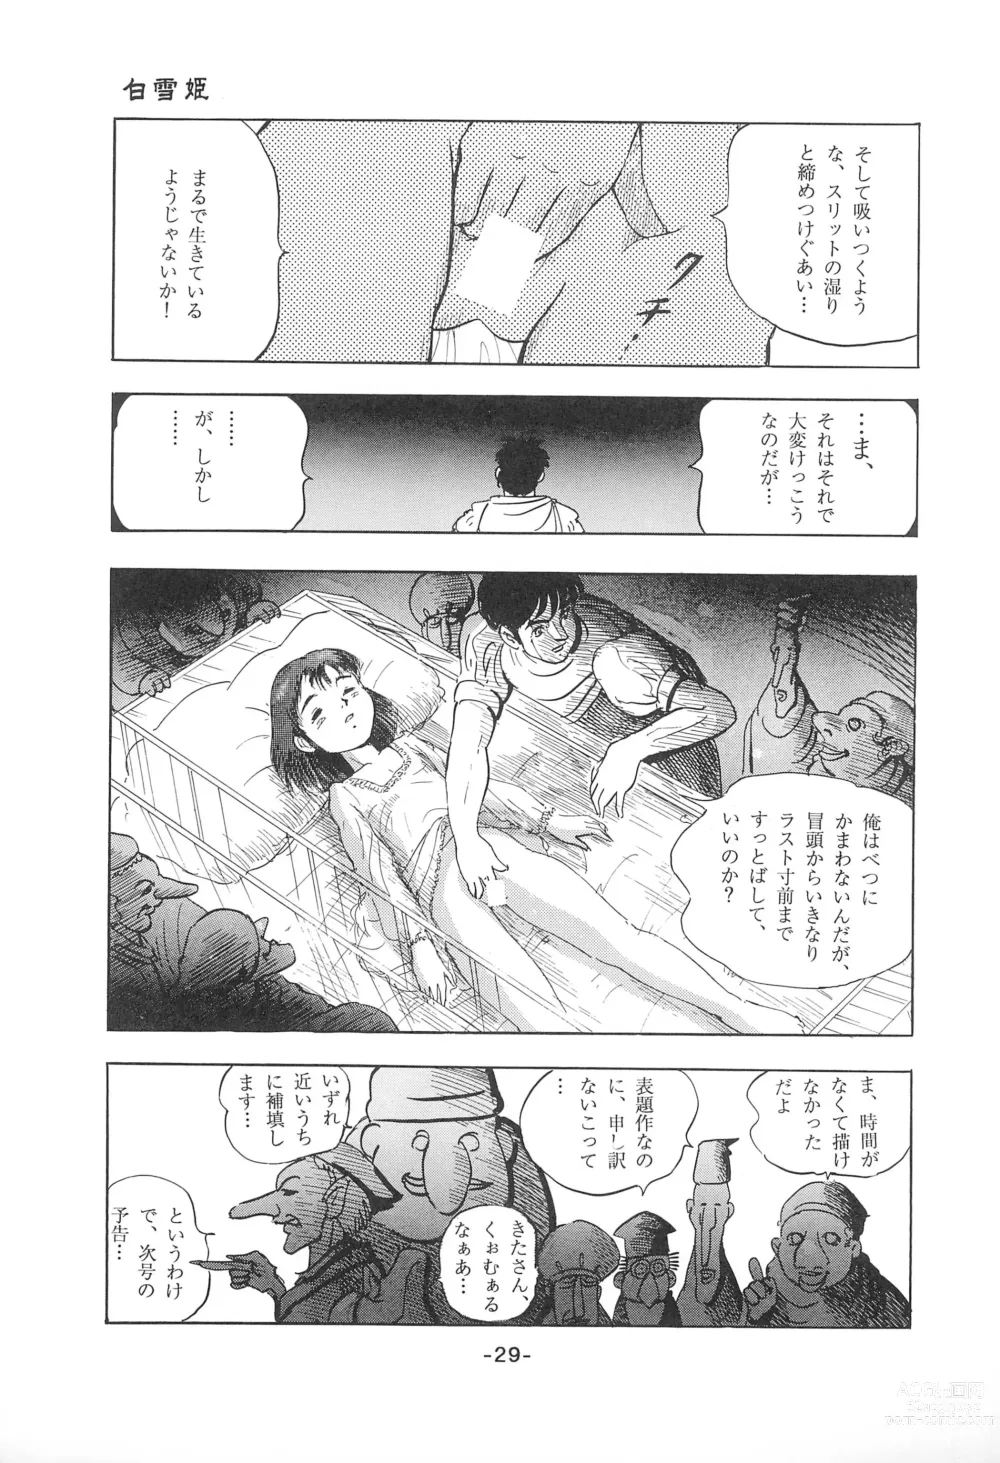 Page 31 of doujinshi Tousaku Douwa-shuu 1 Shirayukihime